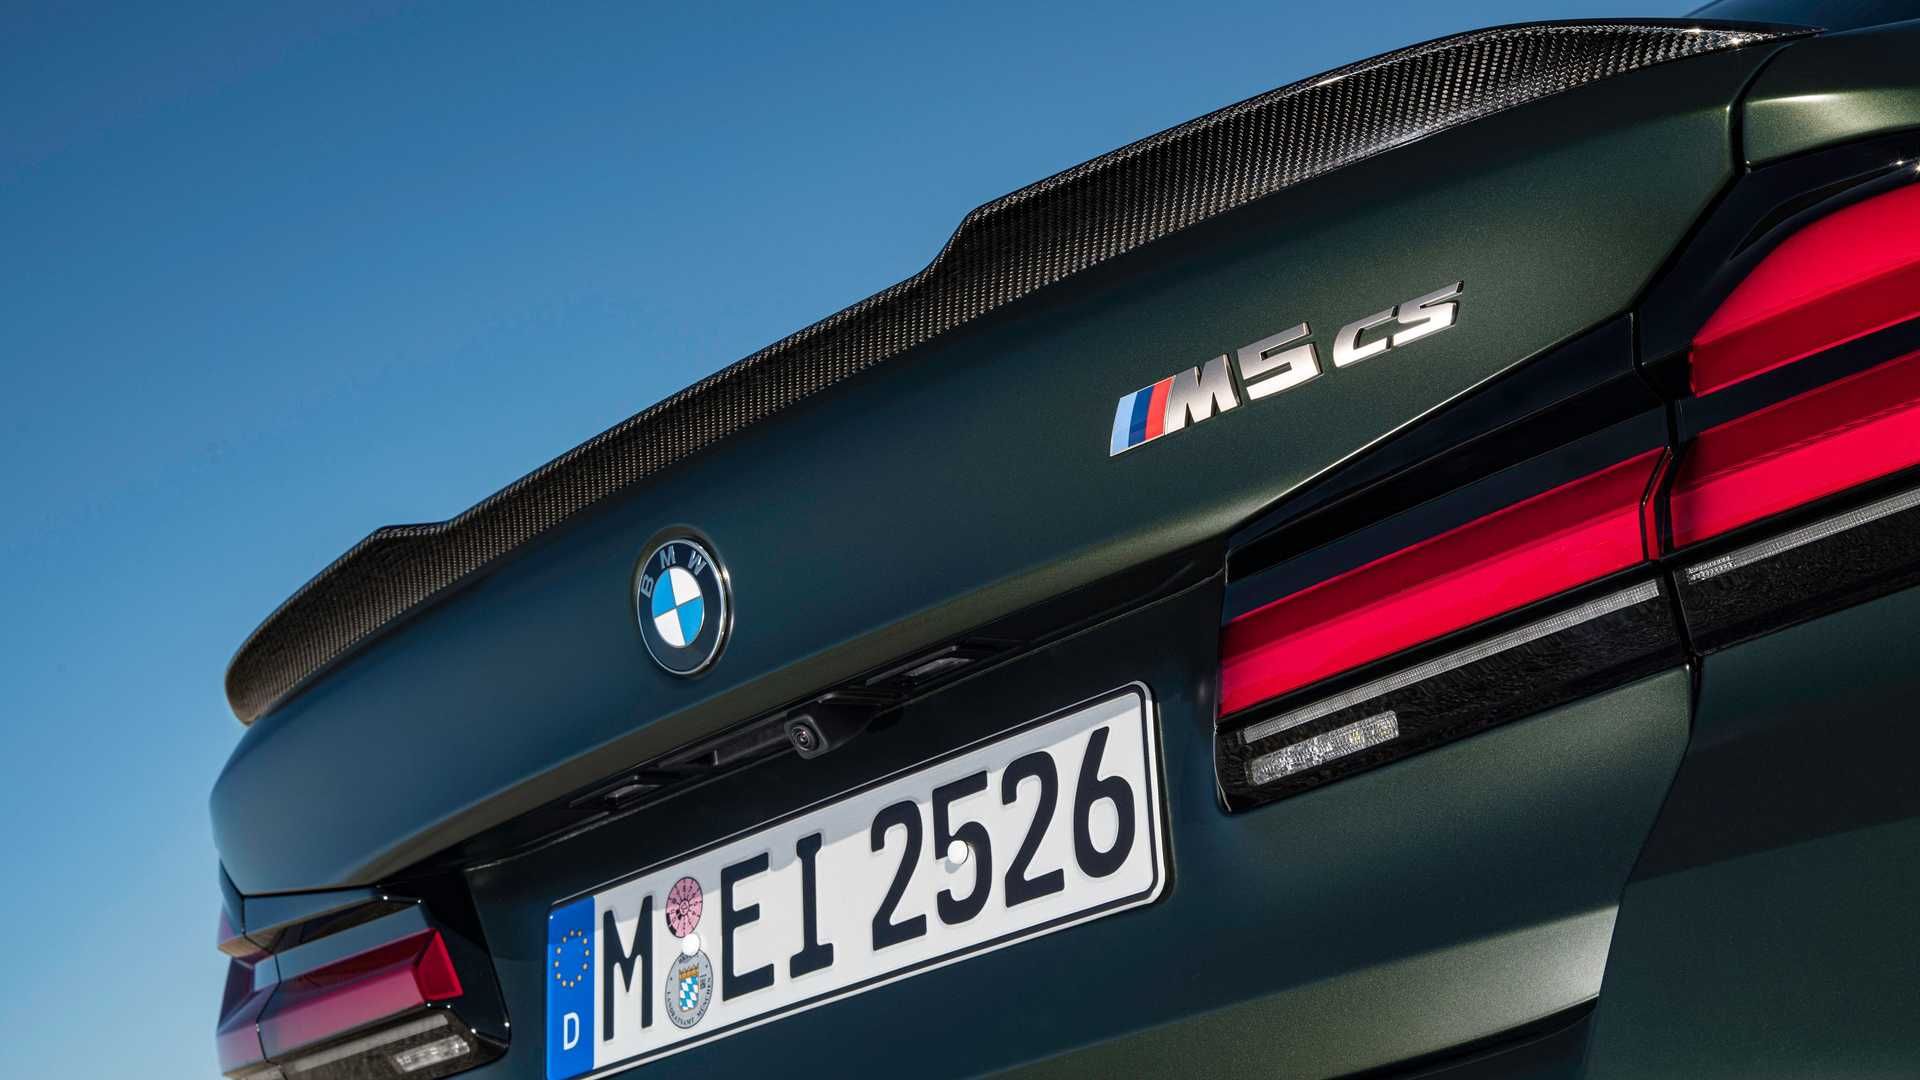 مرجع متخصصين ايران BMW M5 CS بي ام و ام 5 سي اس 2022 نماي صندوق